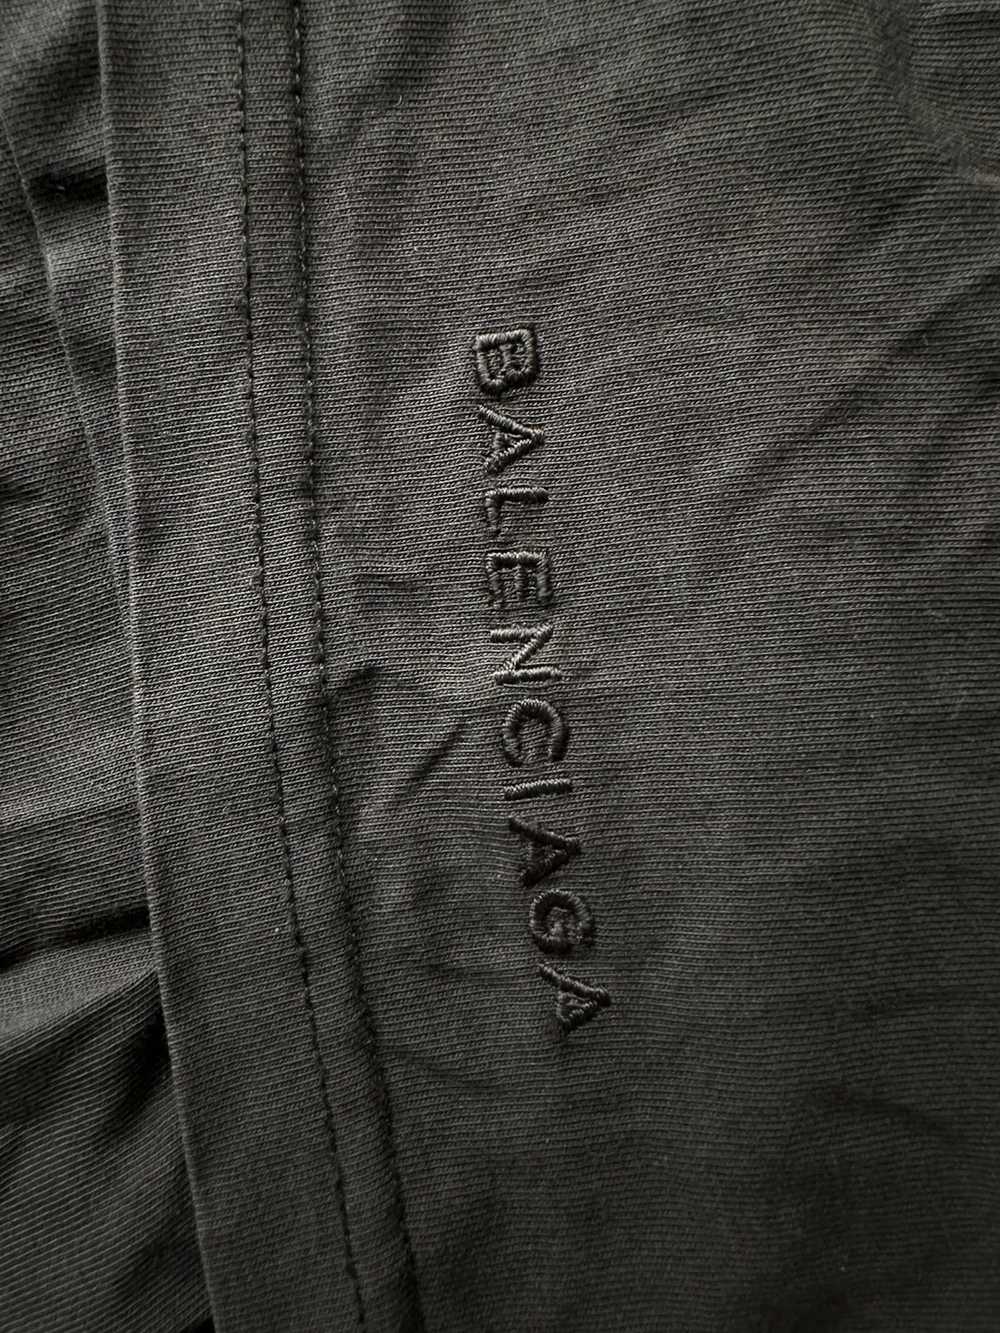 Balenciaga Balenciaga Unisex Size (XL) T-Shirt - image 5